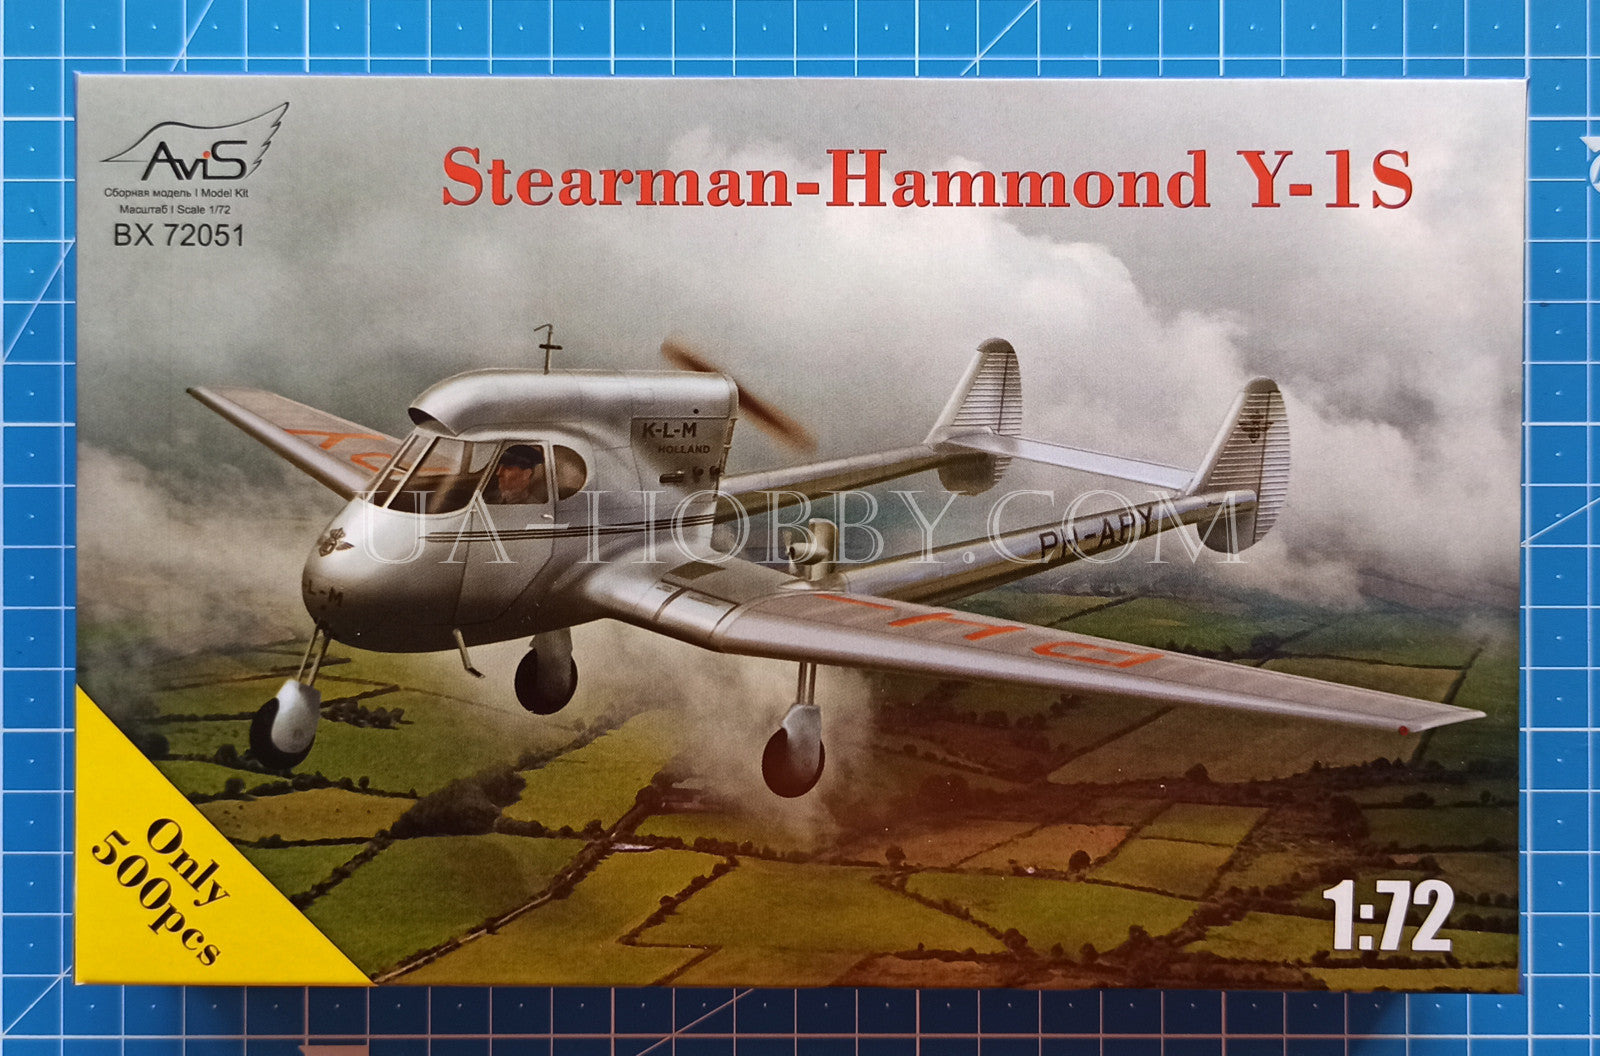 1/72 Stearman-Hammond Y-1S. AviS BX 72051